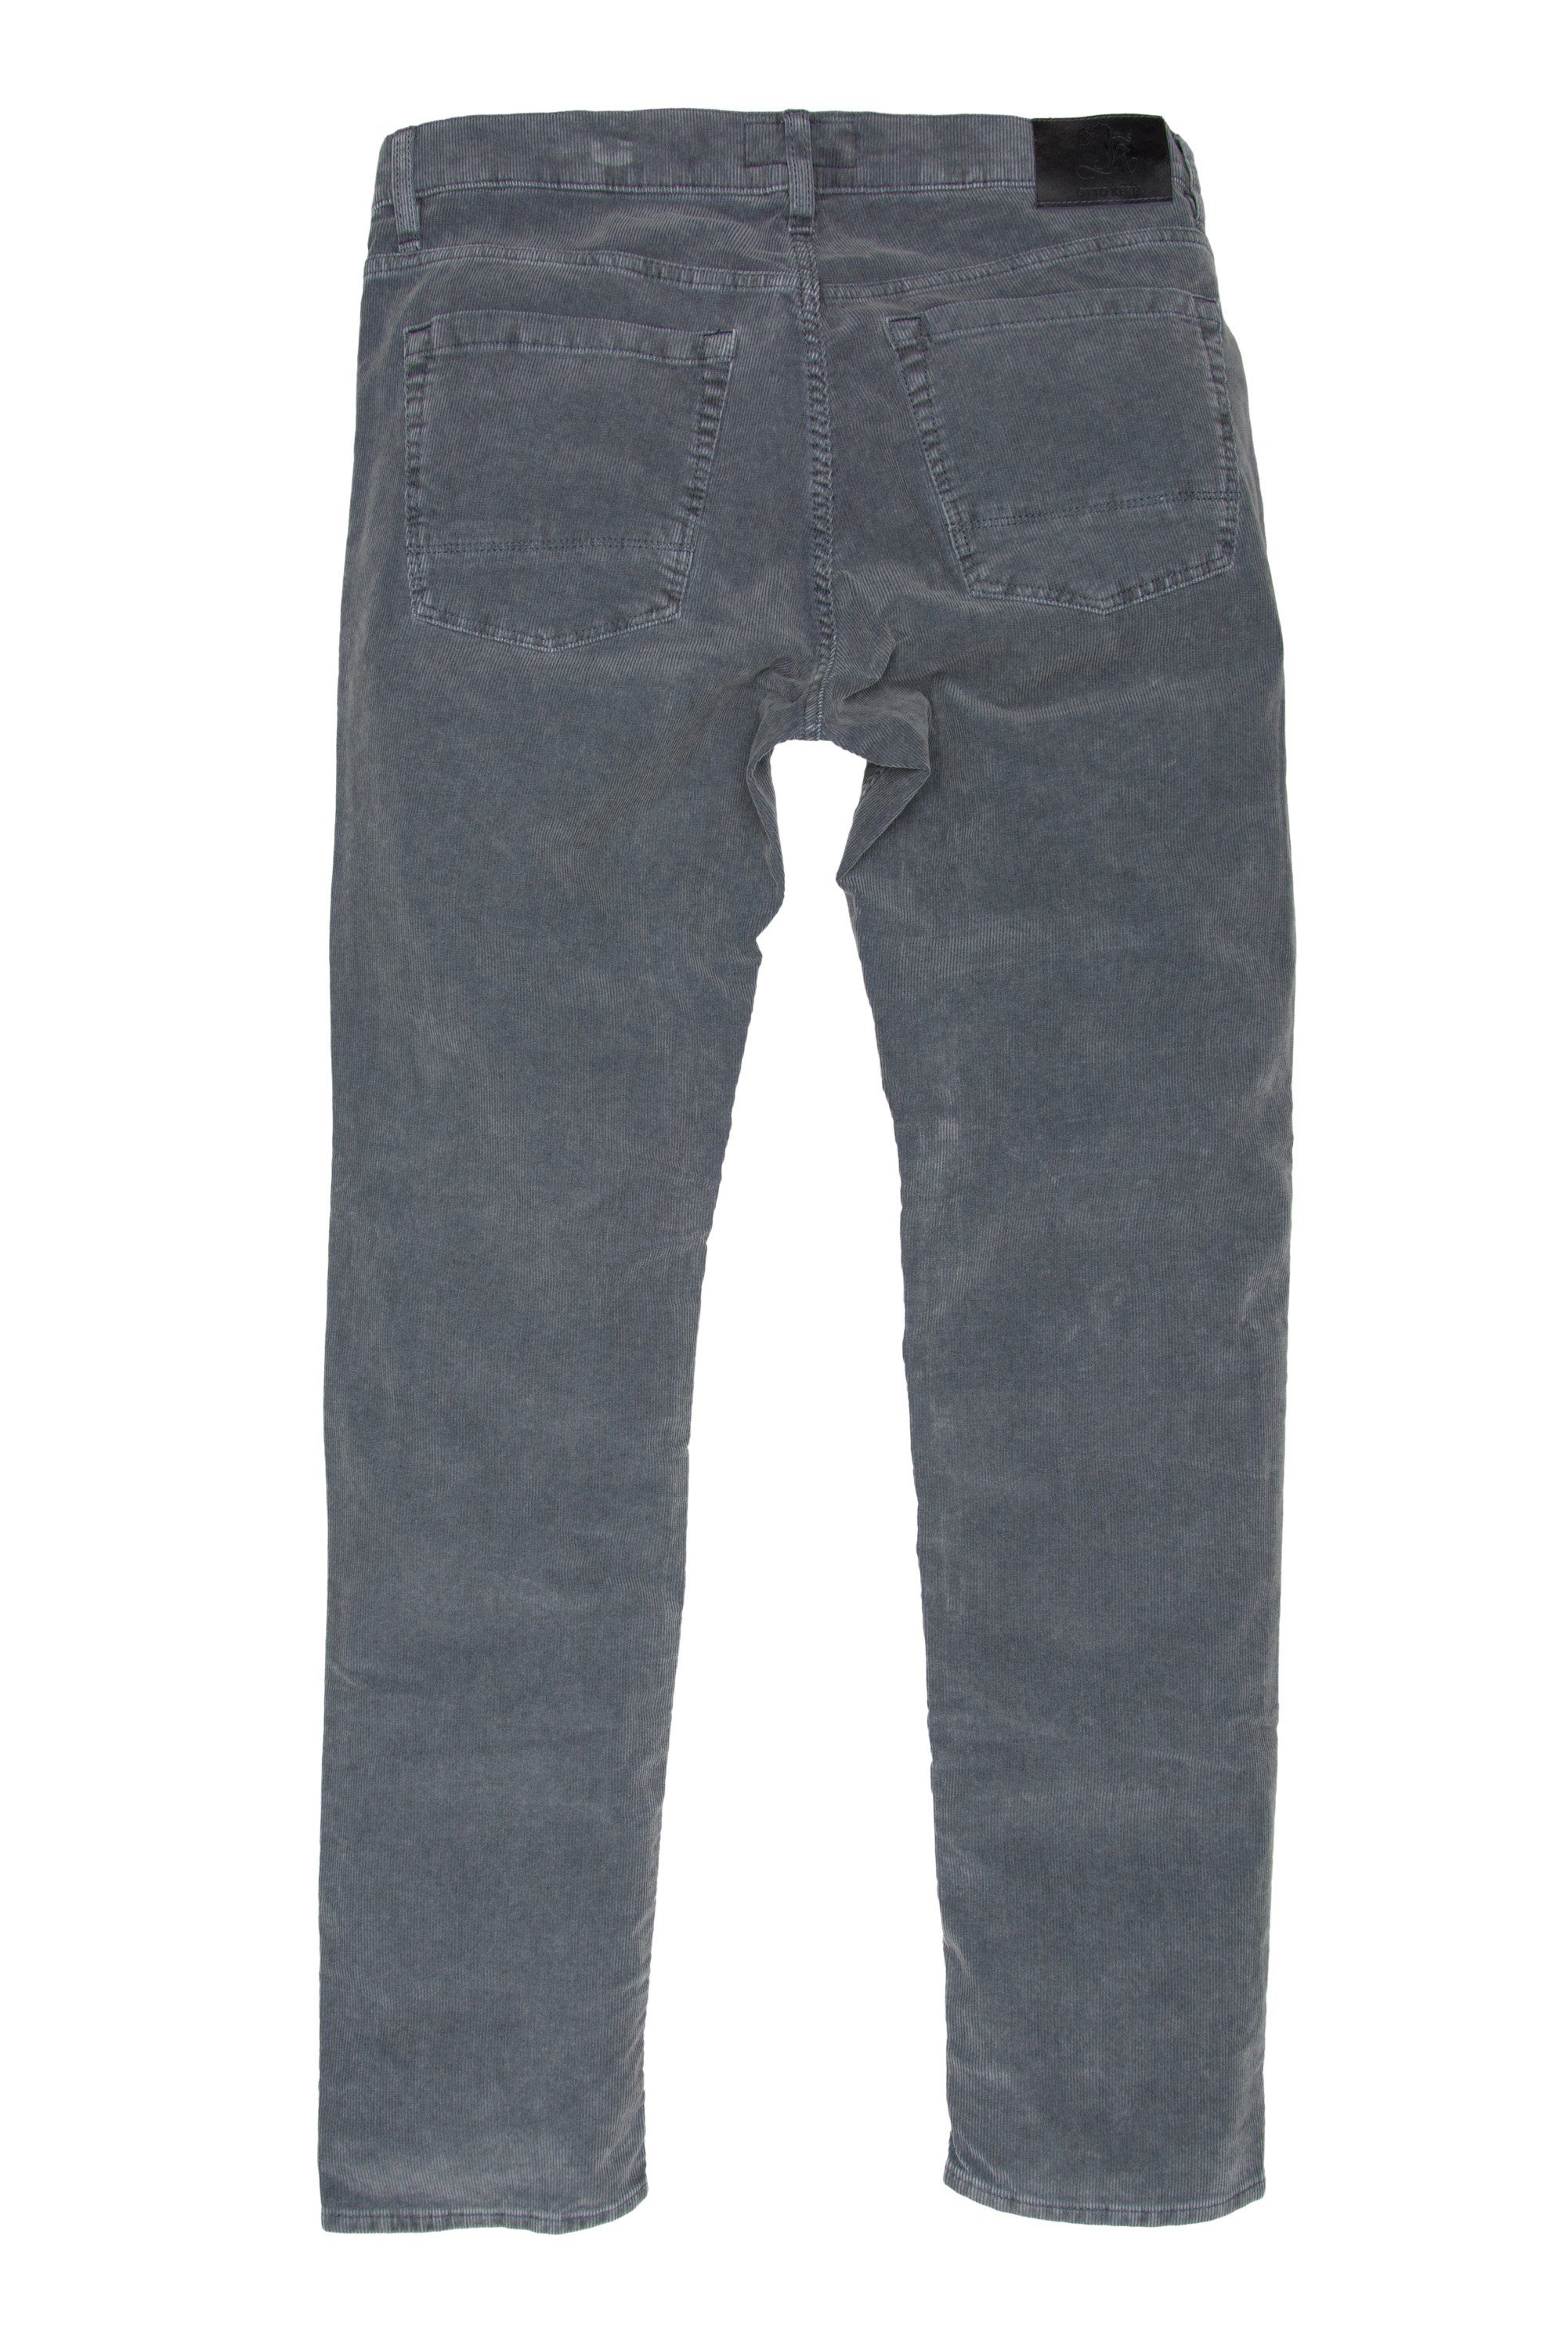 Kern 5-Pocket-Jeans OTTO KERN steel RAY 67014 3201.9007